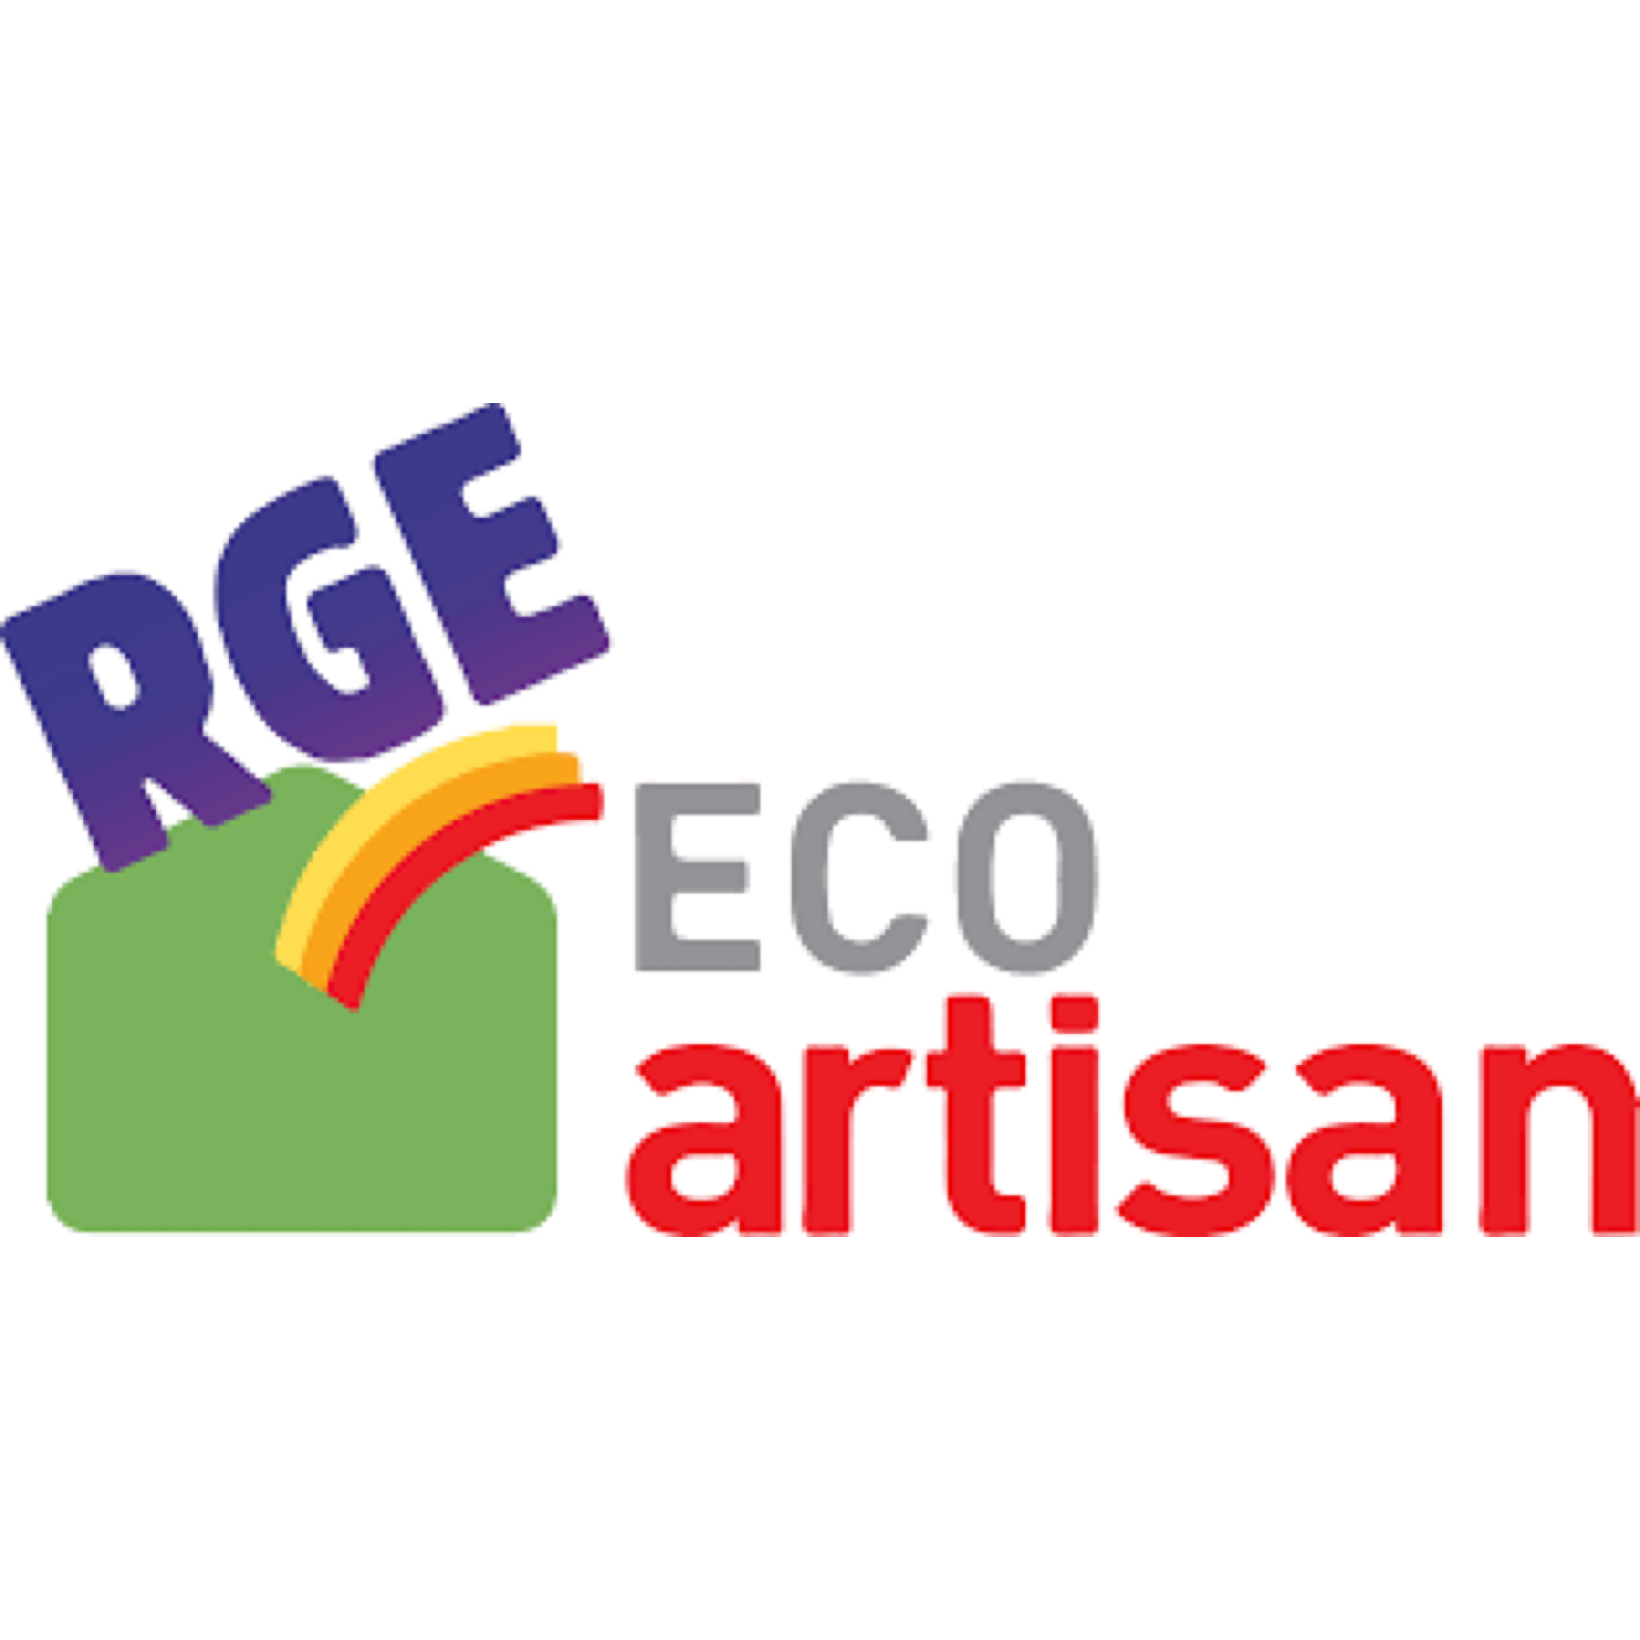 Un logo sur fond blanc, carré vert avec un arc en ciel. Logo RGE Eco artisan